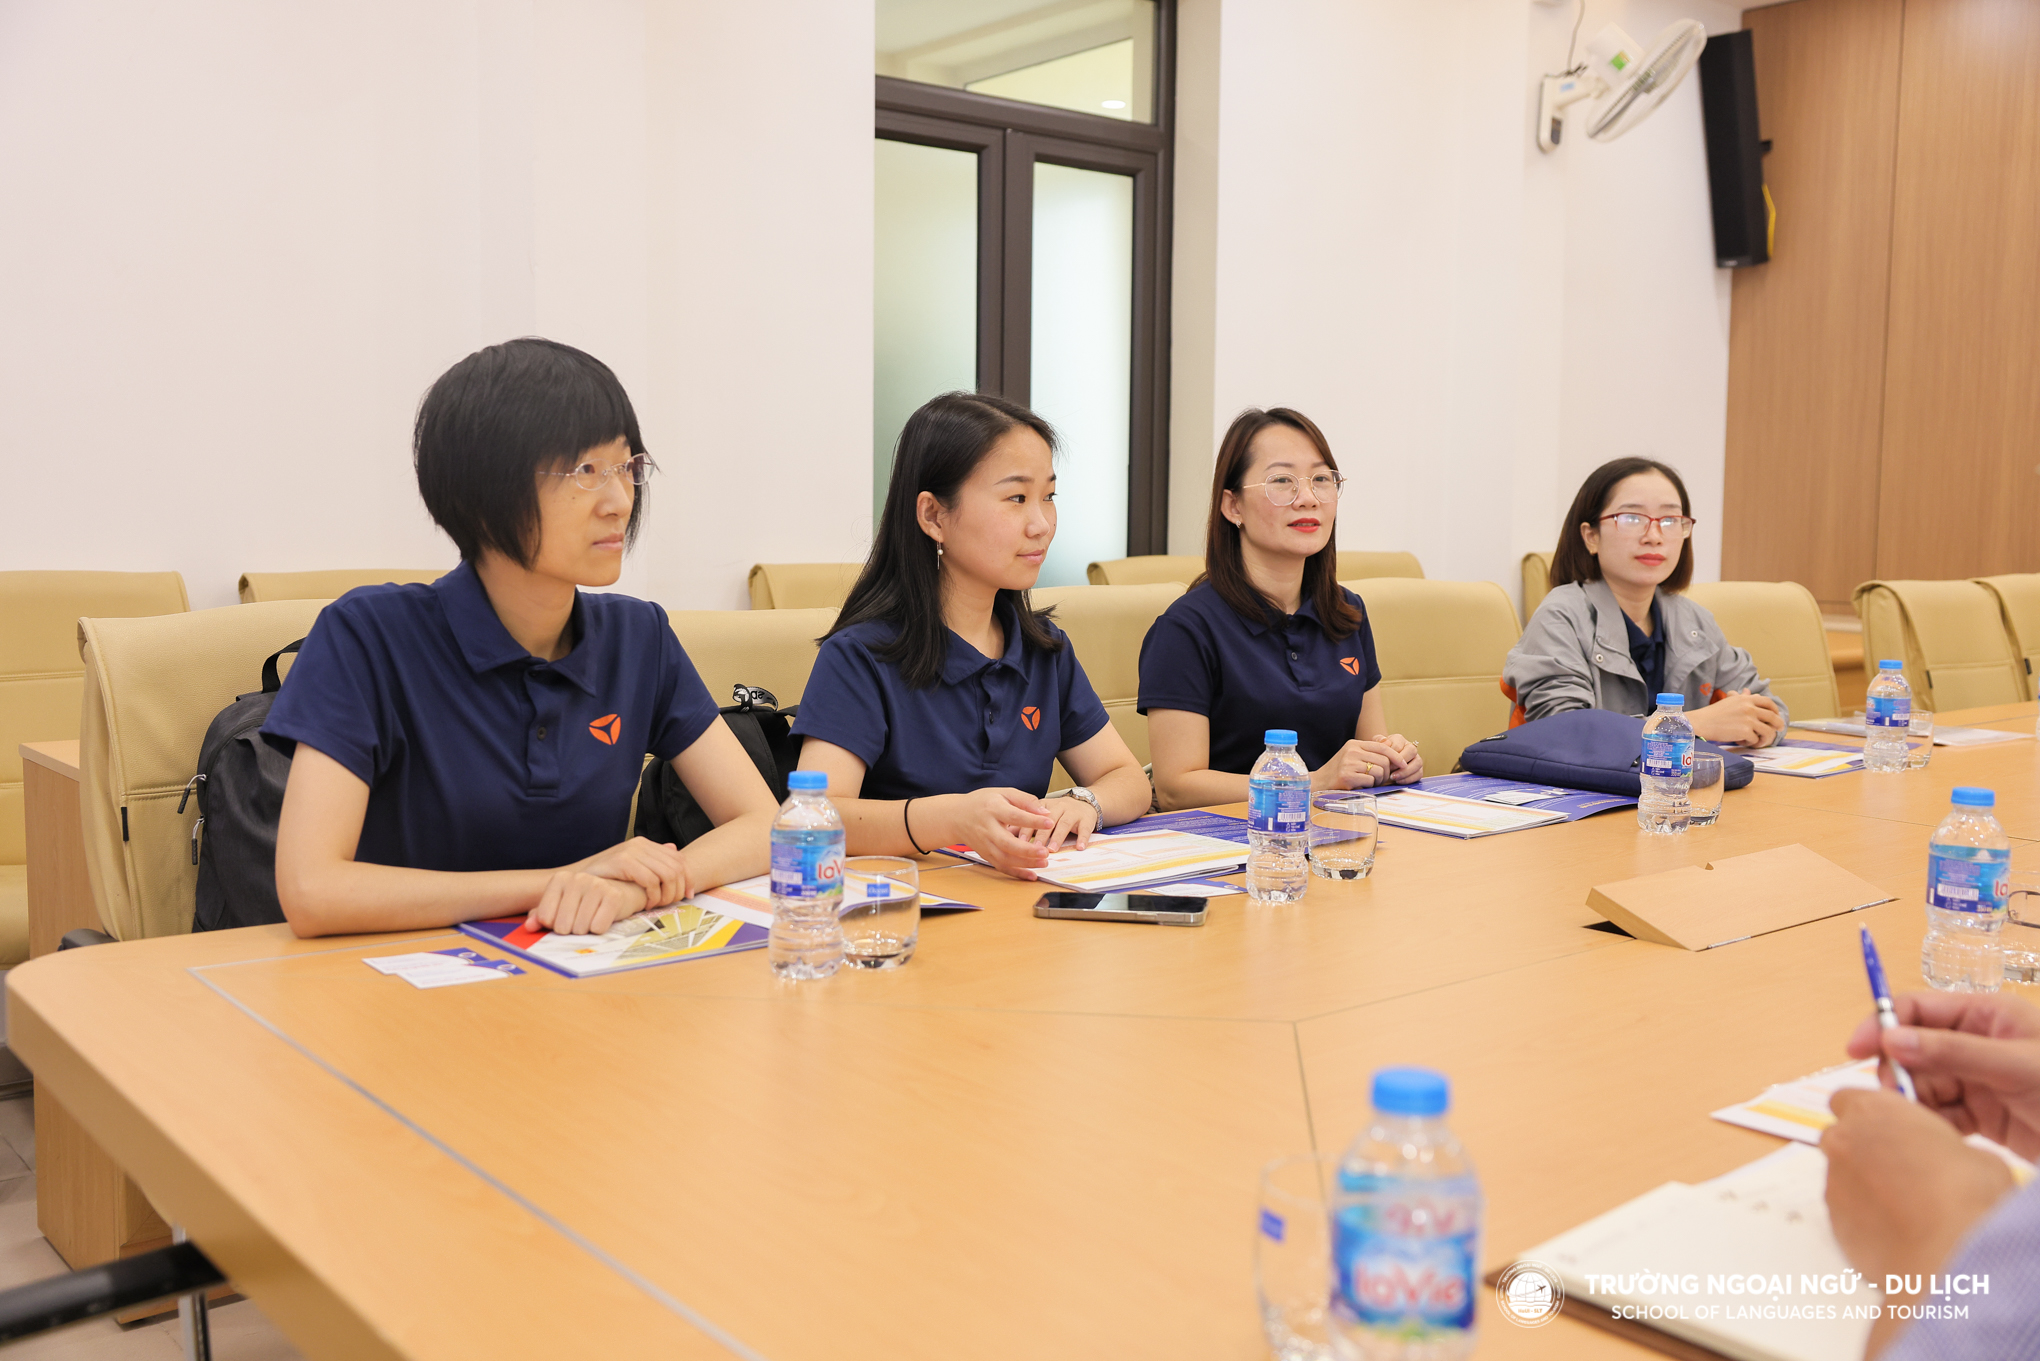 Kết nối hợp tác giữa Trường Ngoại ngữ - Du lịch với Công ty TNHH Electronic Motorcycle Yadea Việt Nam